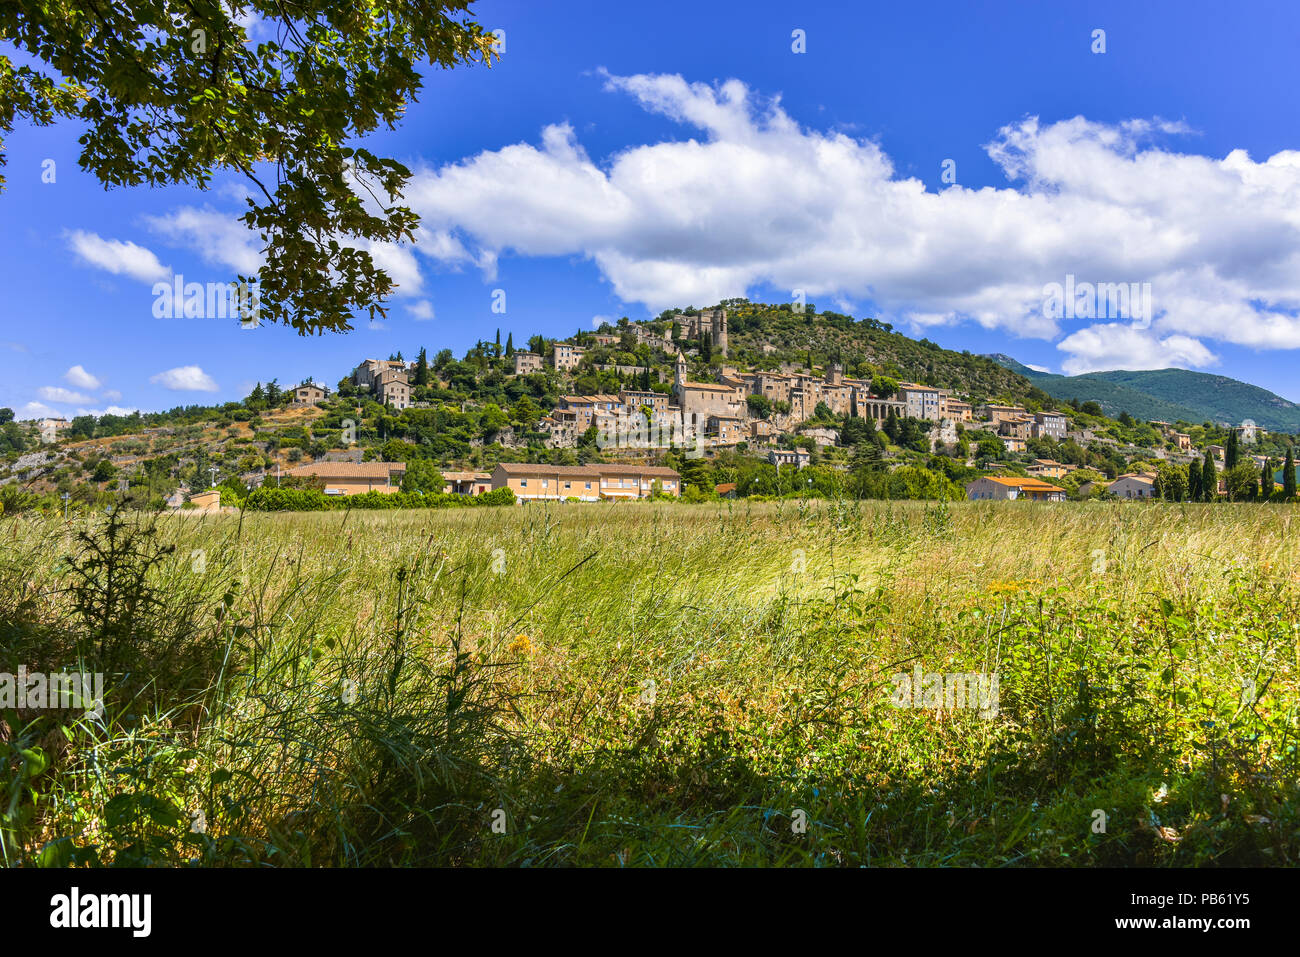 Montbrun-les-Bains, Provence, France, Drôme department, region Auvergne-Rhône-Alpes, Most Beautiful Villages of France Stock Photo